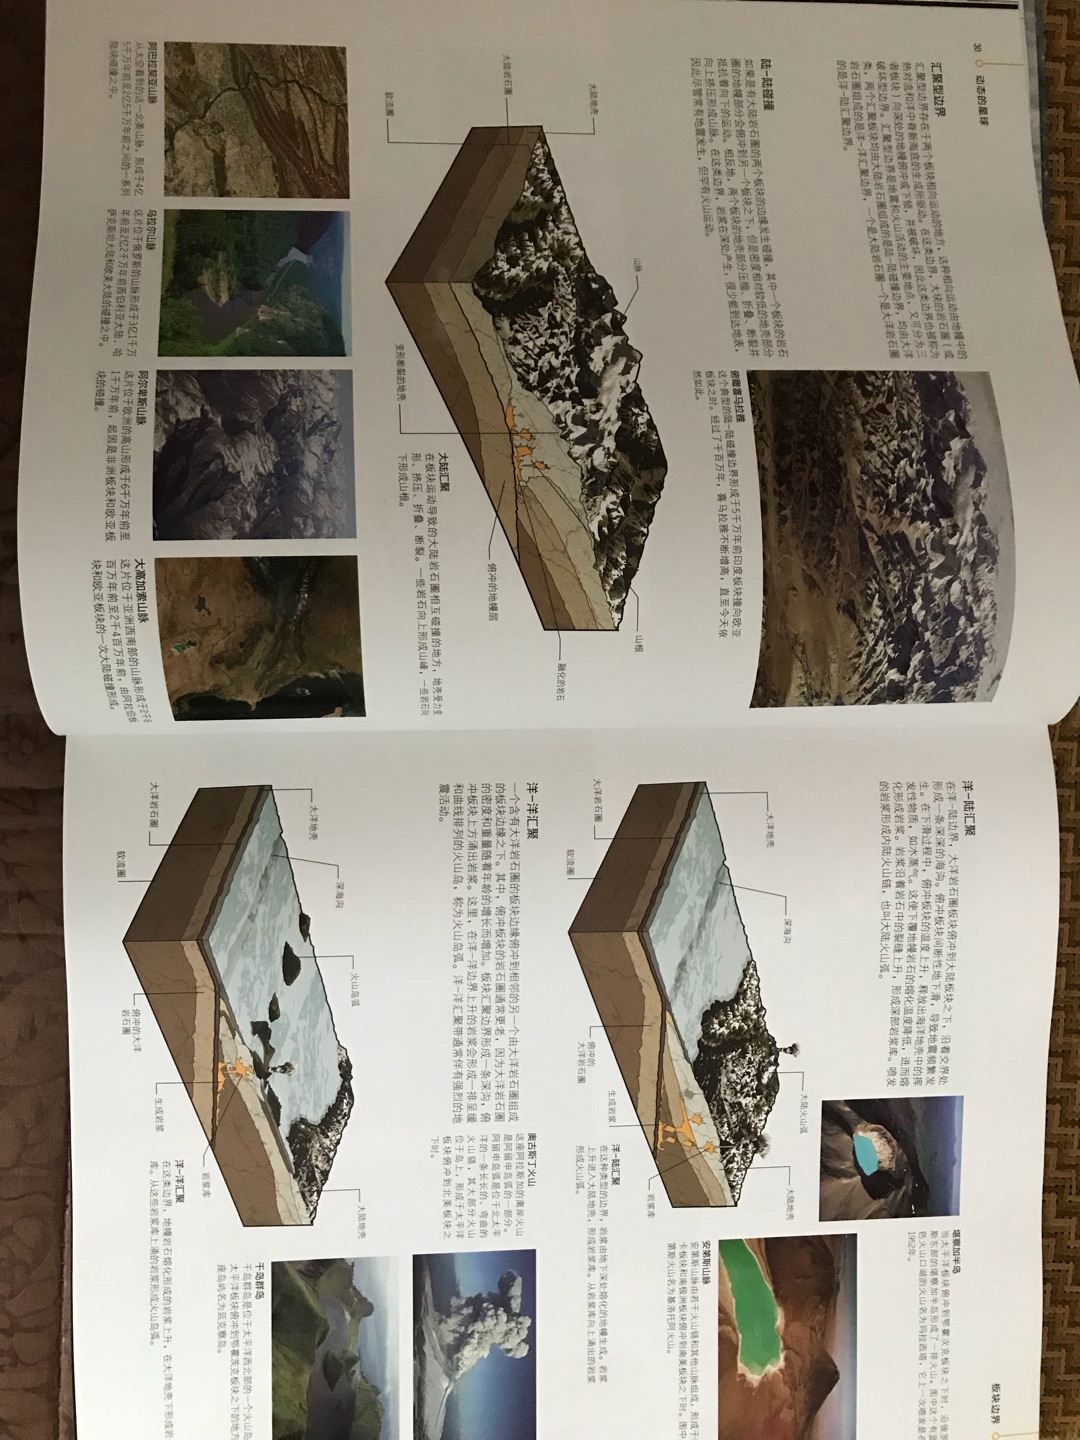 图文并茂、非常详尽地讲解了造山运动、地震 火山 海啸 非常适合作为地理课外拓展阅读